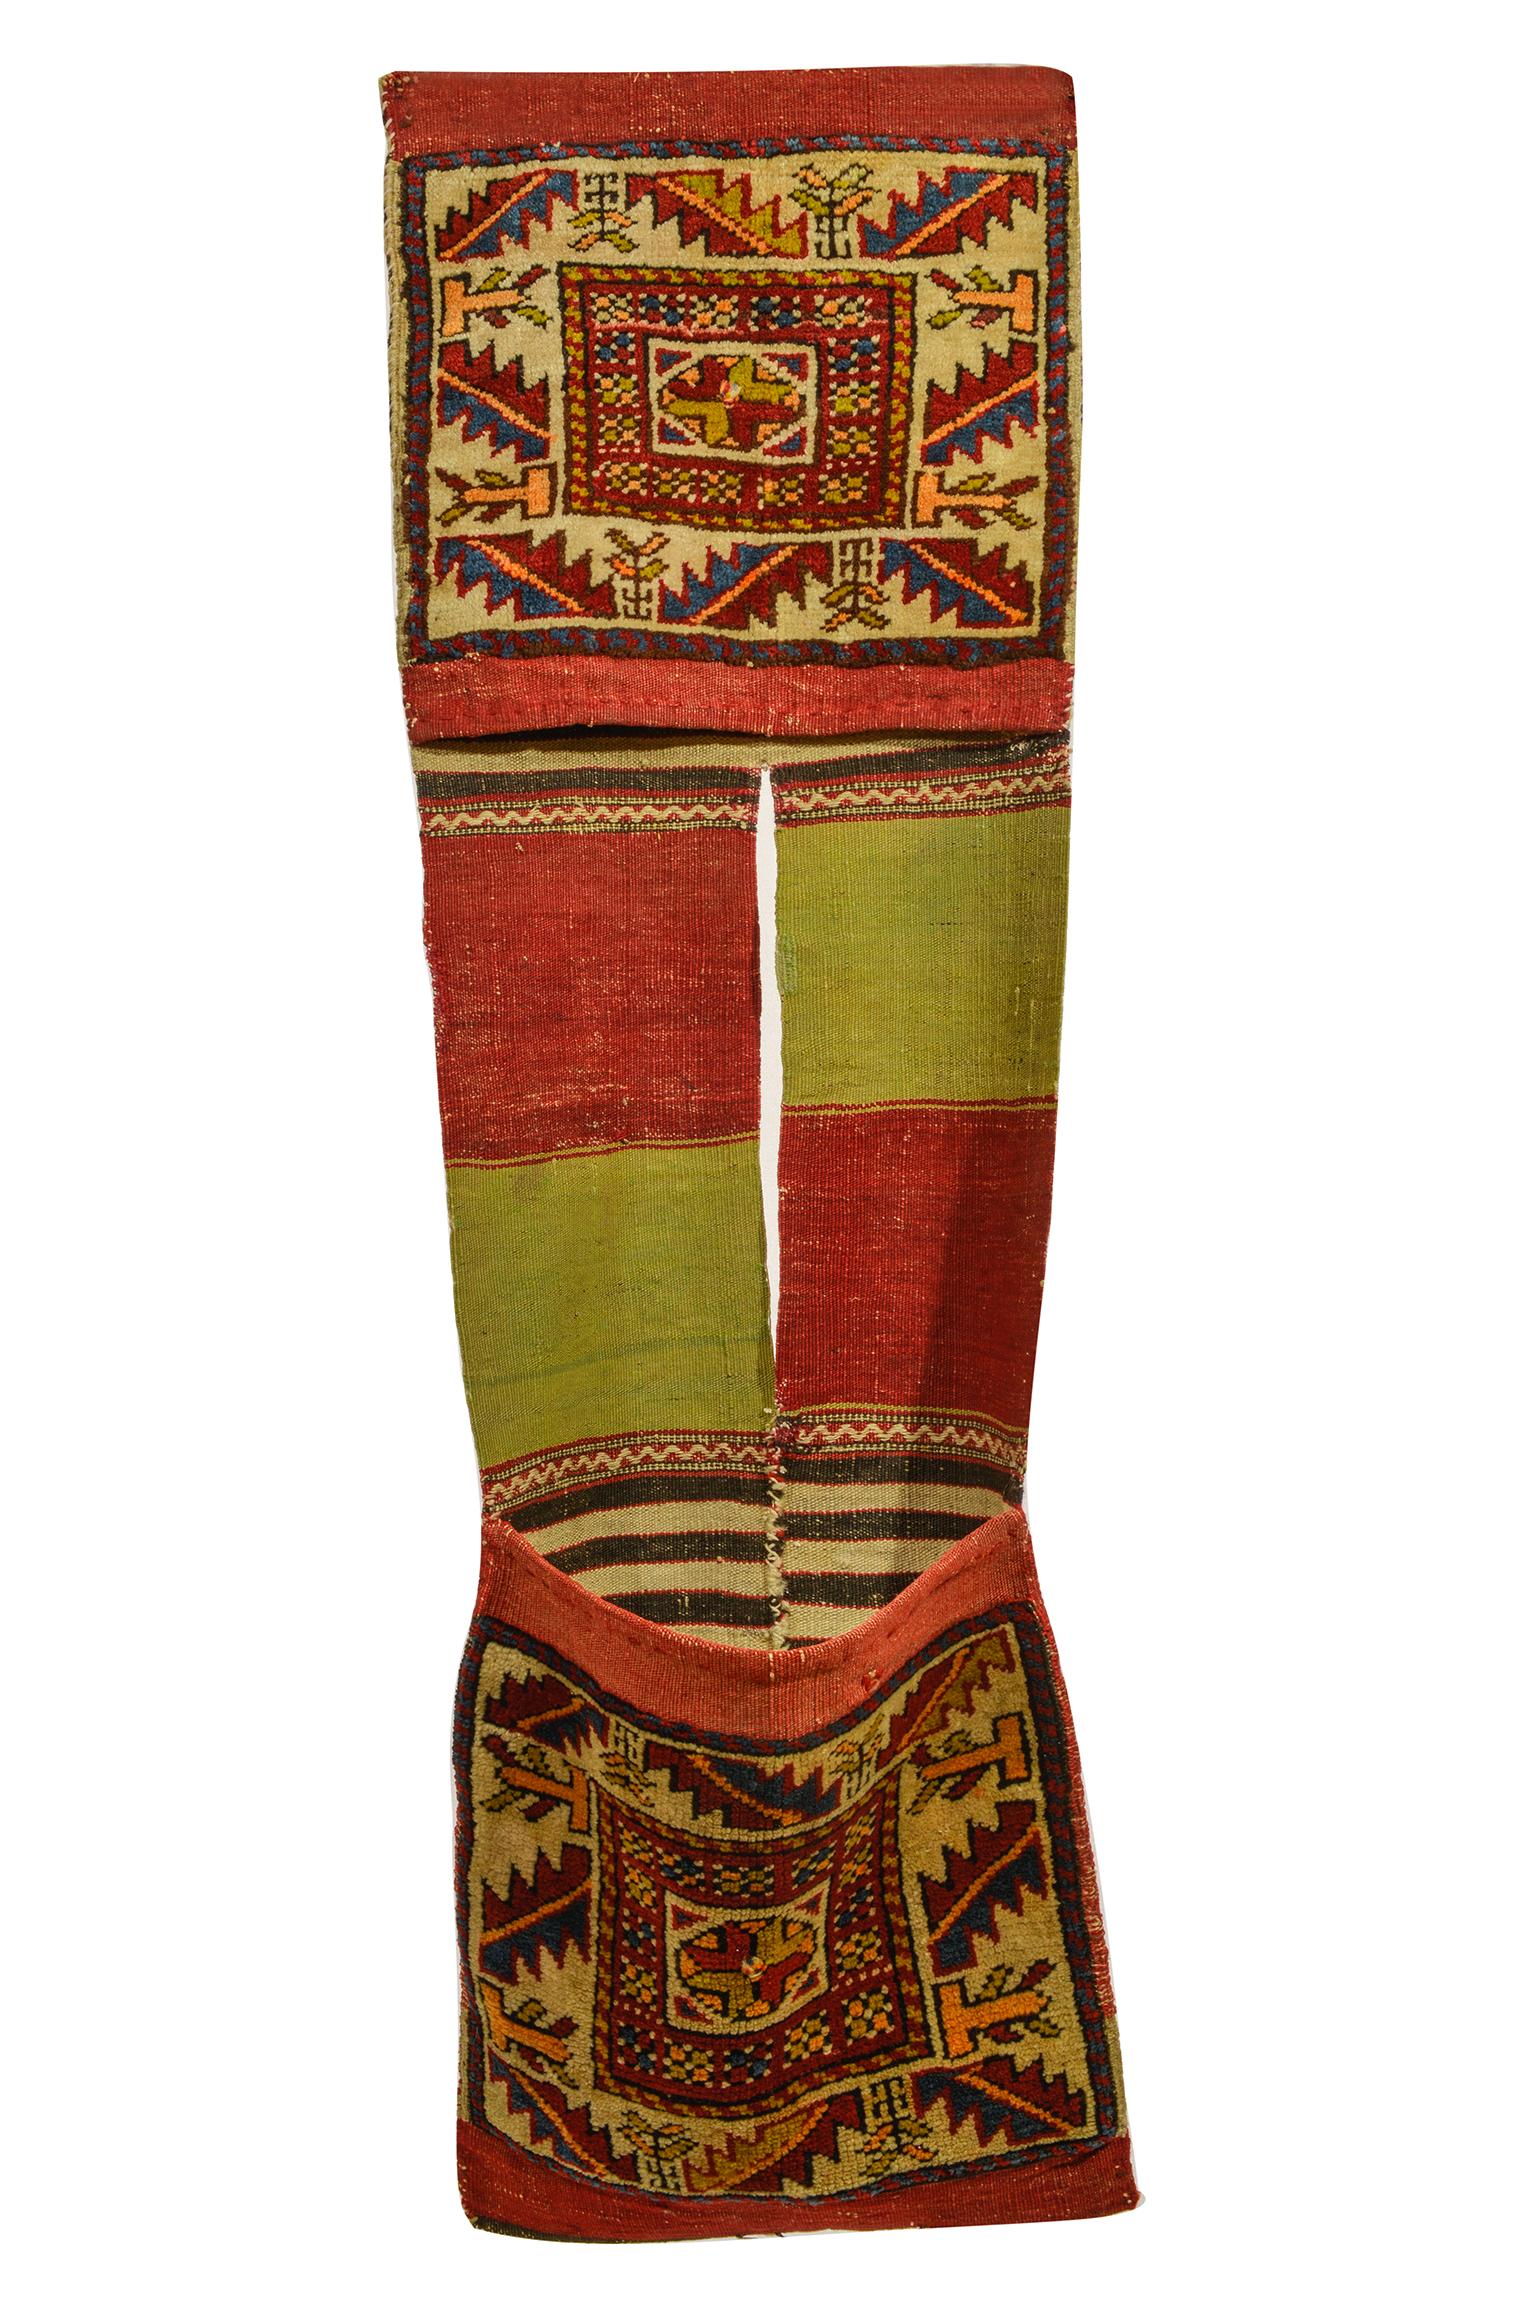 nr. 946 - Ancienne sacoche Shahsavan, avec un design intéressant et de belles couleurs : bordure avec des feuilles et des petits arbres, partie centrale en Kilim avec des couleurs alternées rouge et vert pois.
Adapté au mur (horizontal)  comme un